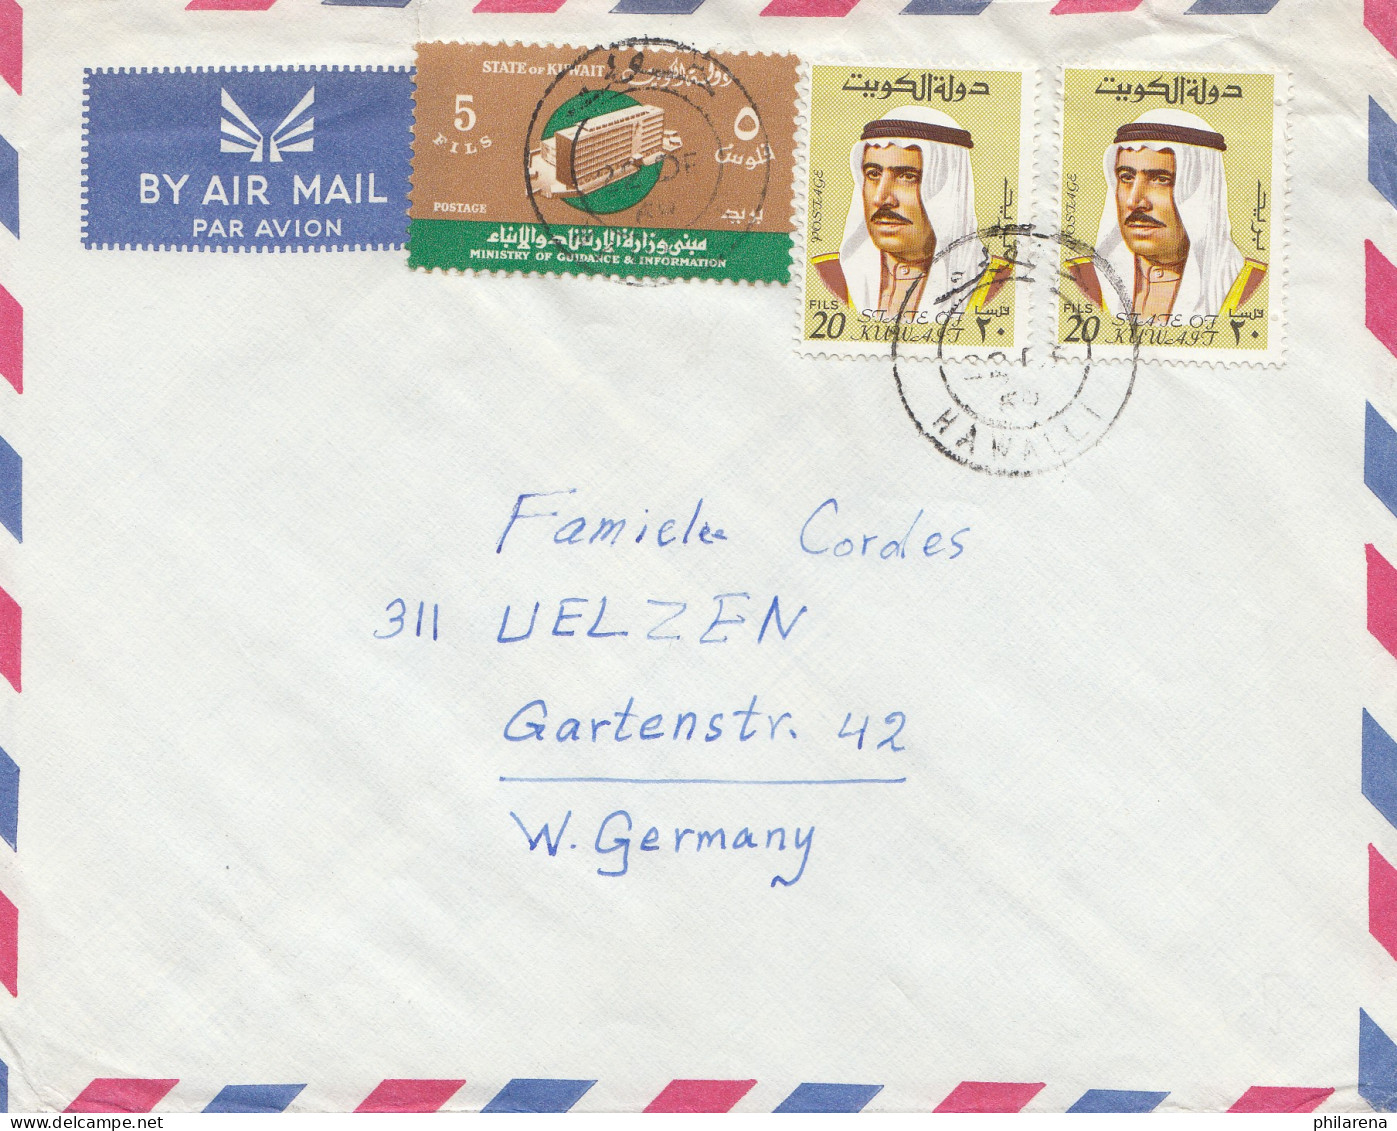 Kuweit: 1988 Via Air Mail To Uelzen - Kuwait